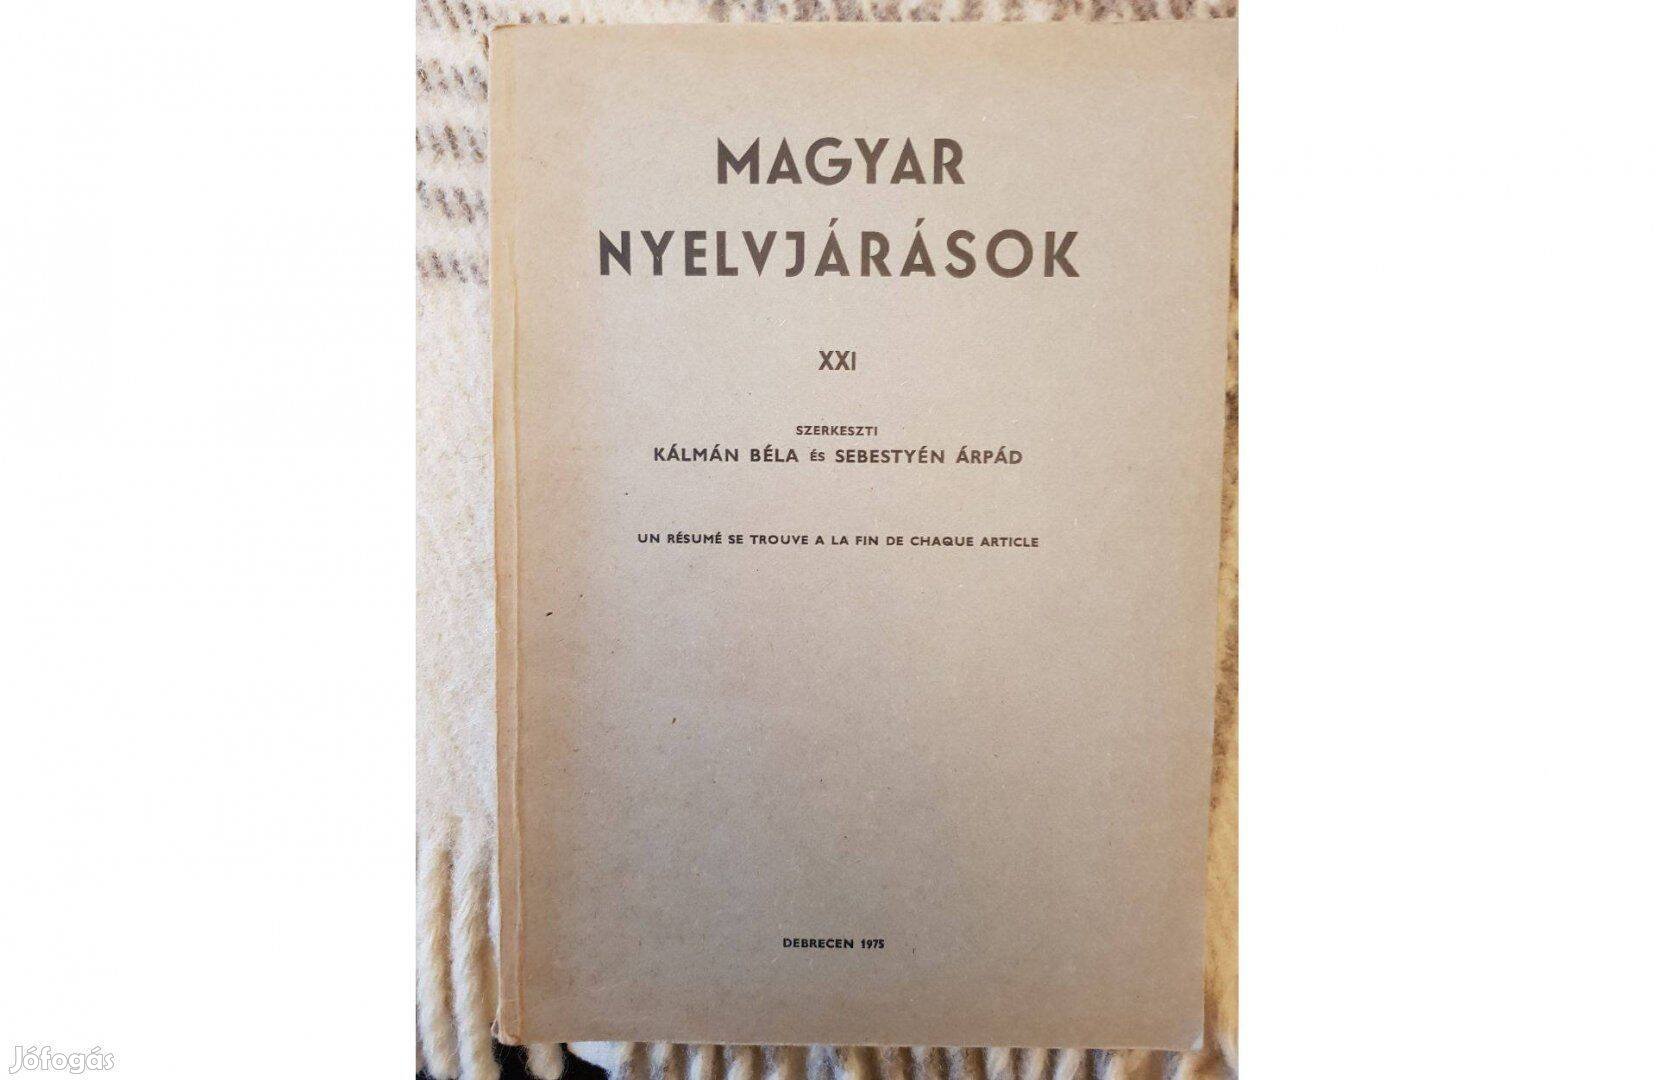 Magyar nyelvjárások. XXI, KLTE 1975 (egyetemi jegyzet)